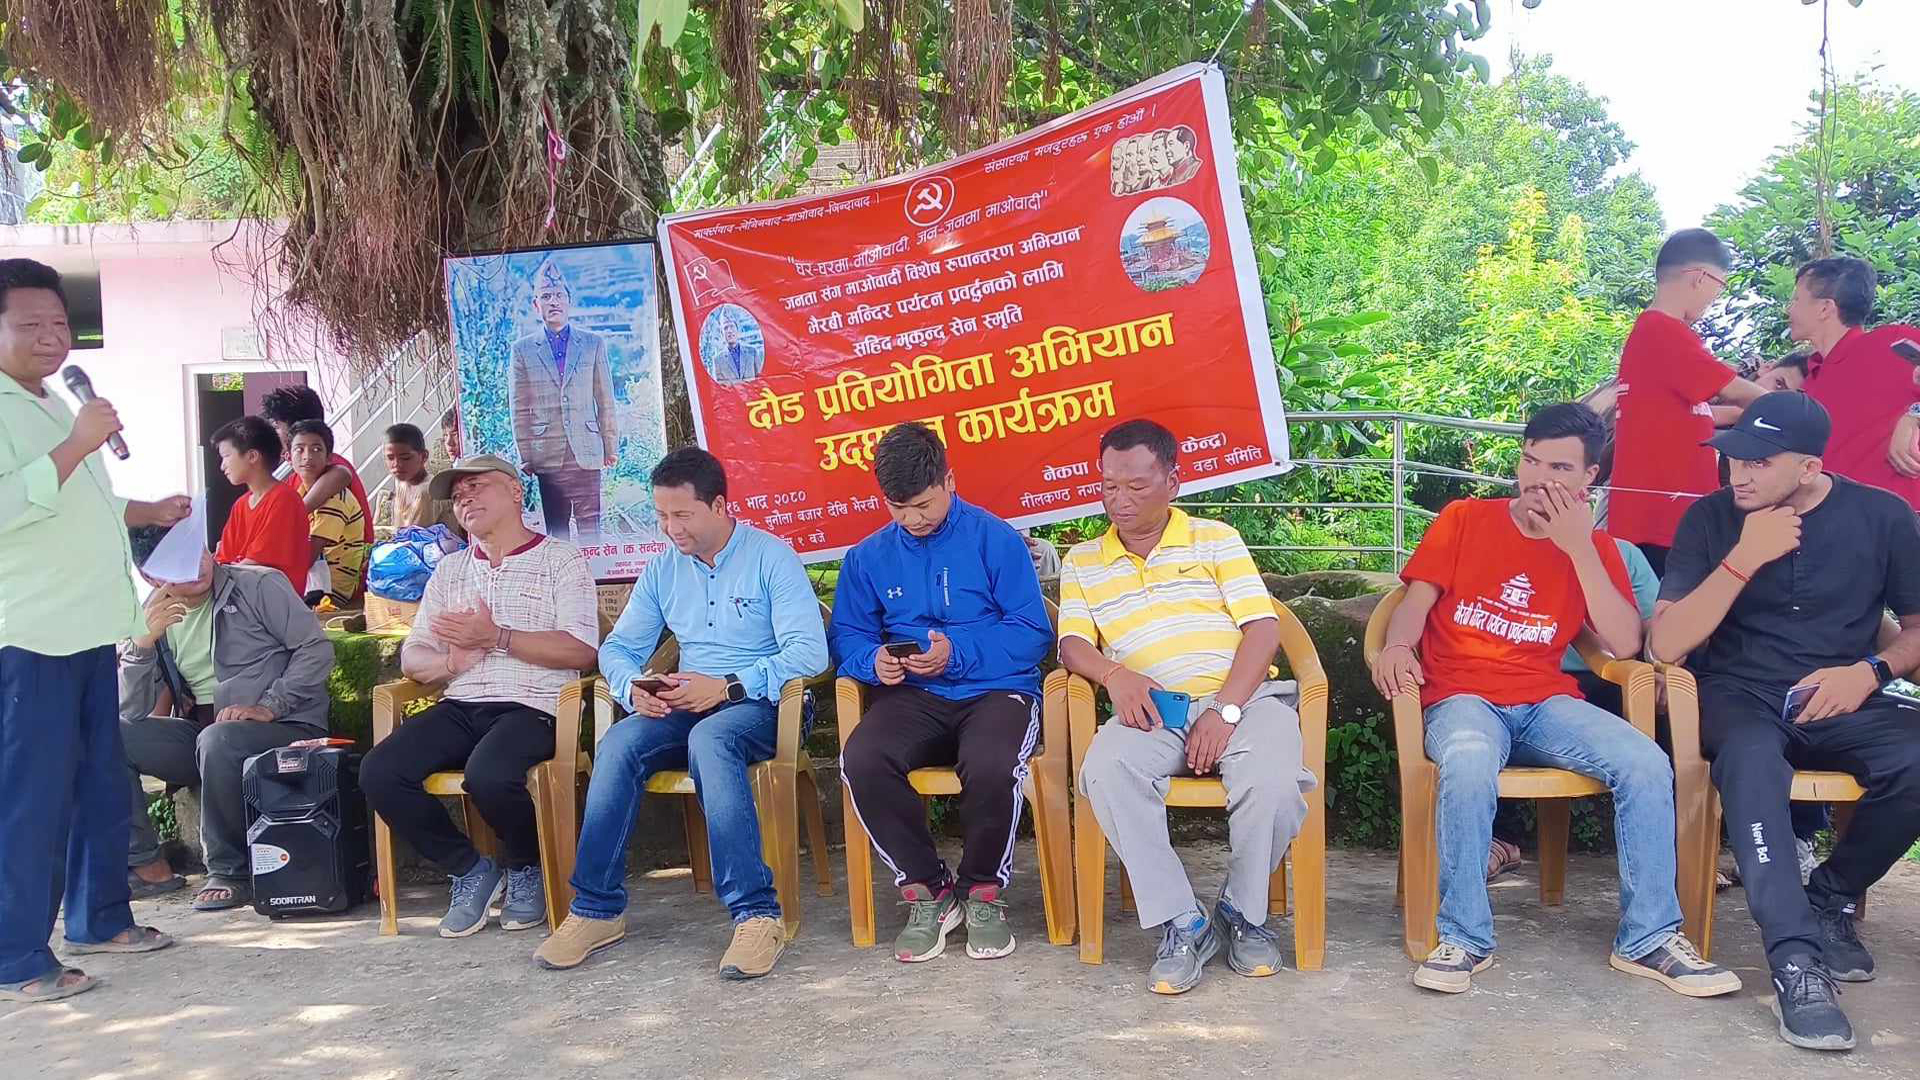 सुनौलाबजारमा माओवादी केन्द्र द्धारा दौड प्रतियोगिता गर्दै अभियान उद्घाटन